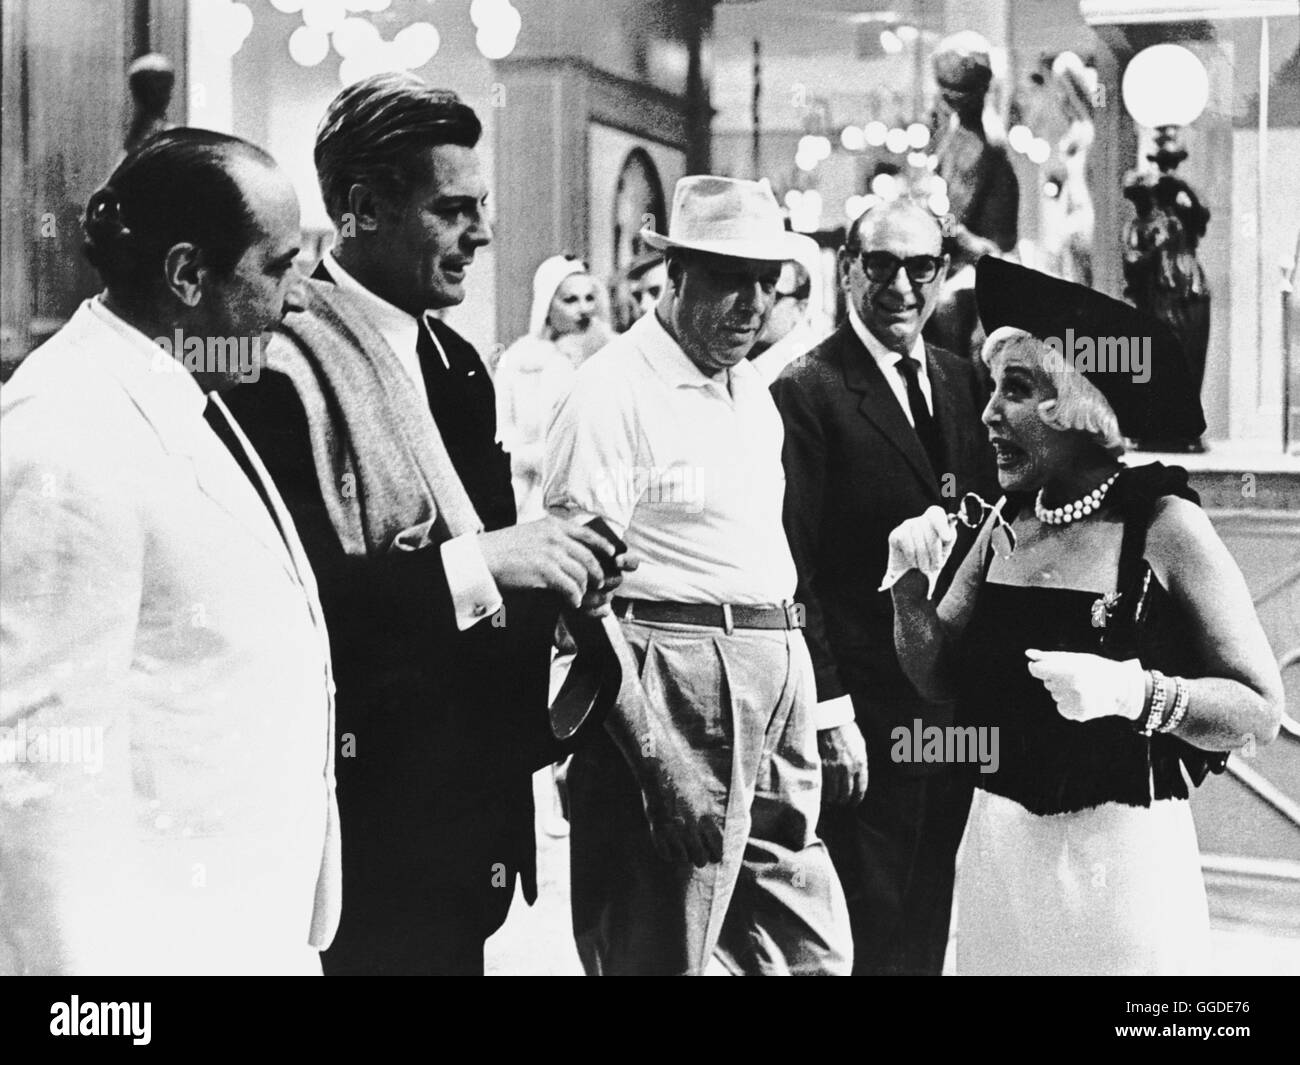 ACHTEINHALB / Otto e mezzo Italien/Frankreich 1962 / Federico Fellini Guido Anselmi (MARCELLO MASTROIANNI, 2.v.l.) ein berühmter Regisseur, gerät in eine berufliche und private Krise... Regie: Federico Fellini aka. Otto e mezzo Stock Photo